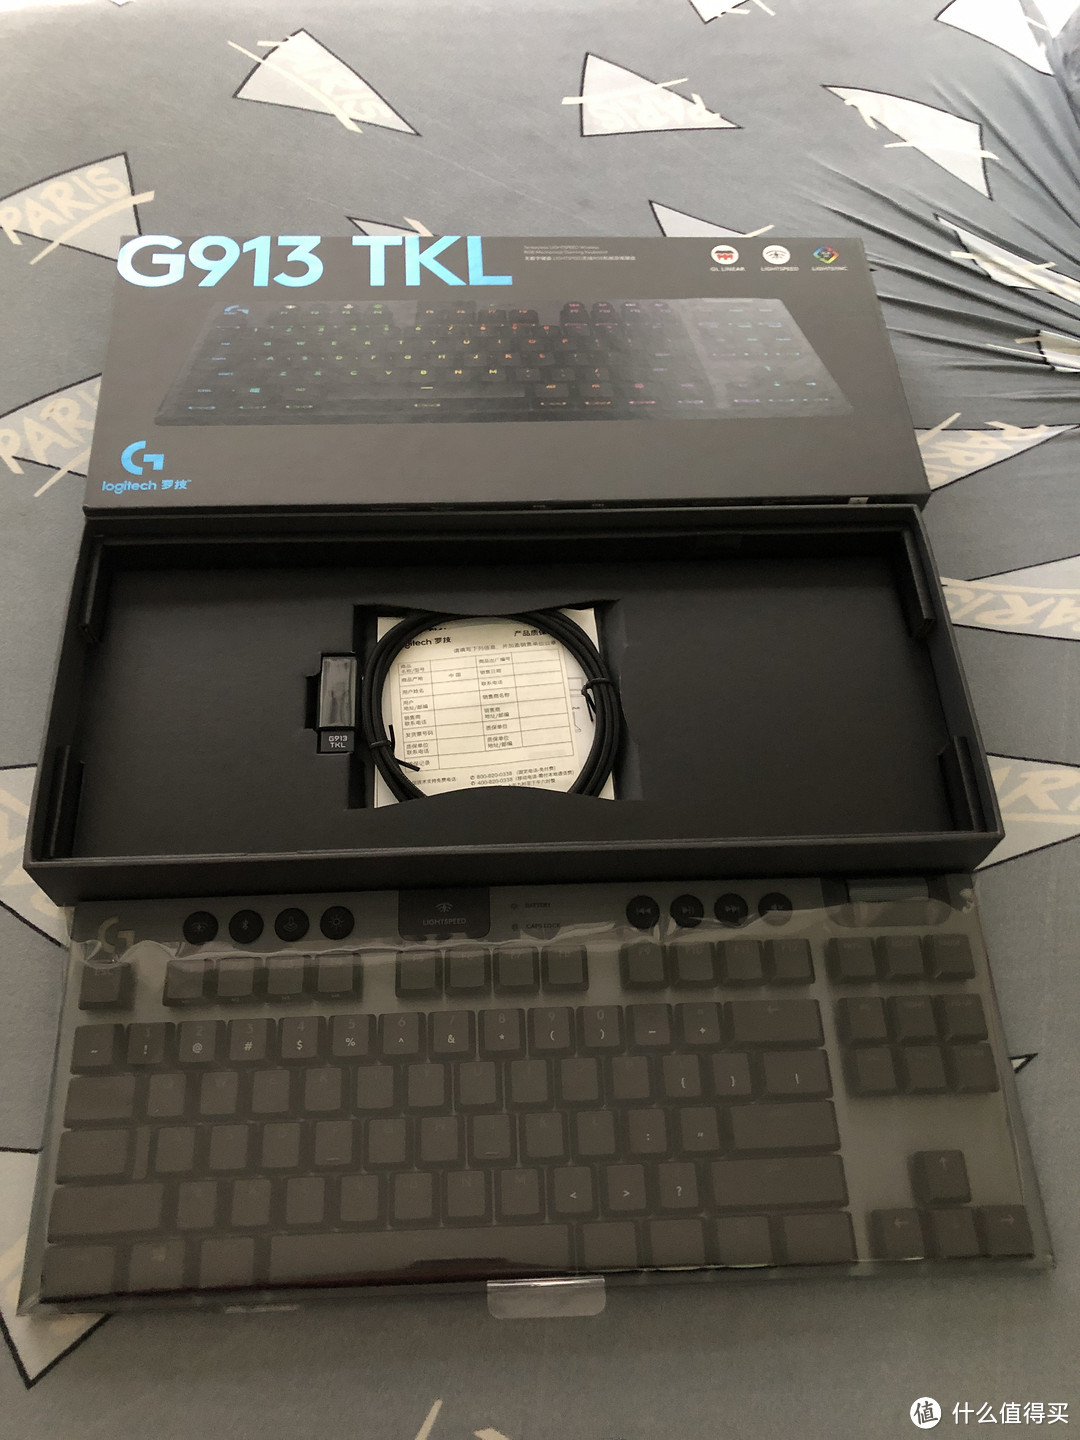 一次完美的减法--罗技G913 TKL无线键盘入手评测